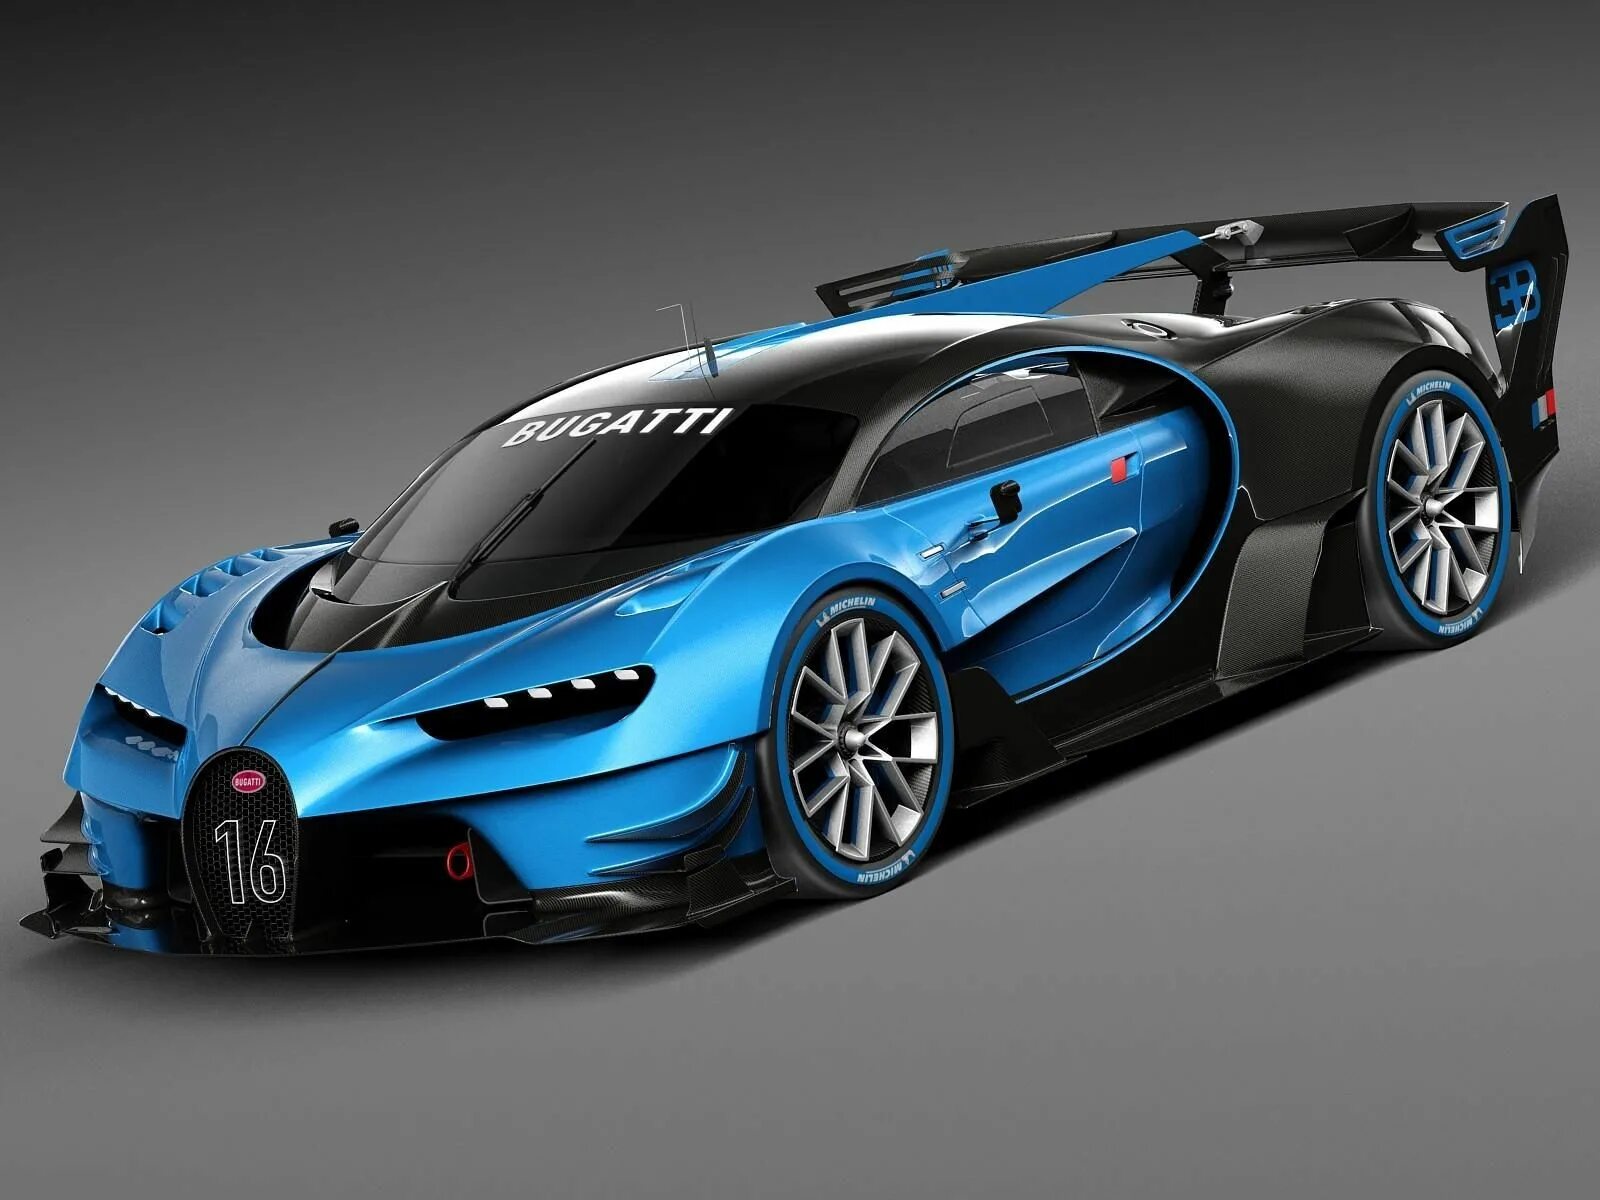 Bugatti Vision Gran Turismo 2015 Concept. Бугатти ЧИРОН концепт. Bugatti Vision Gran Turismo Concept 2016. Бугатти Шерон концепт. Новая bugatti